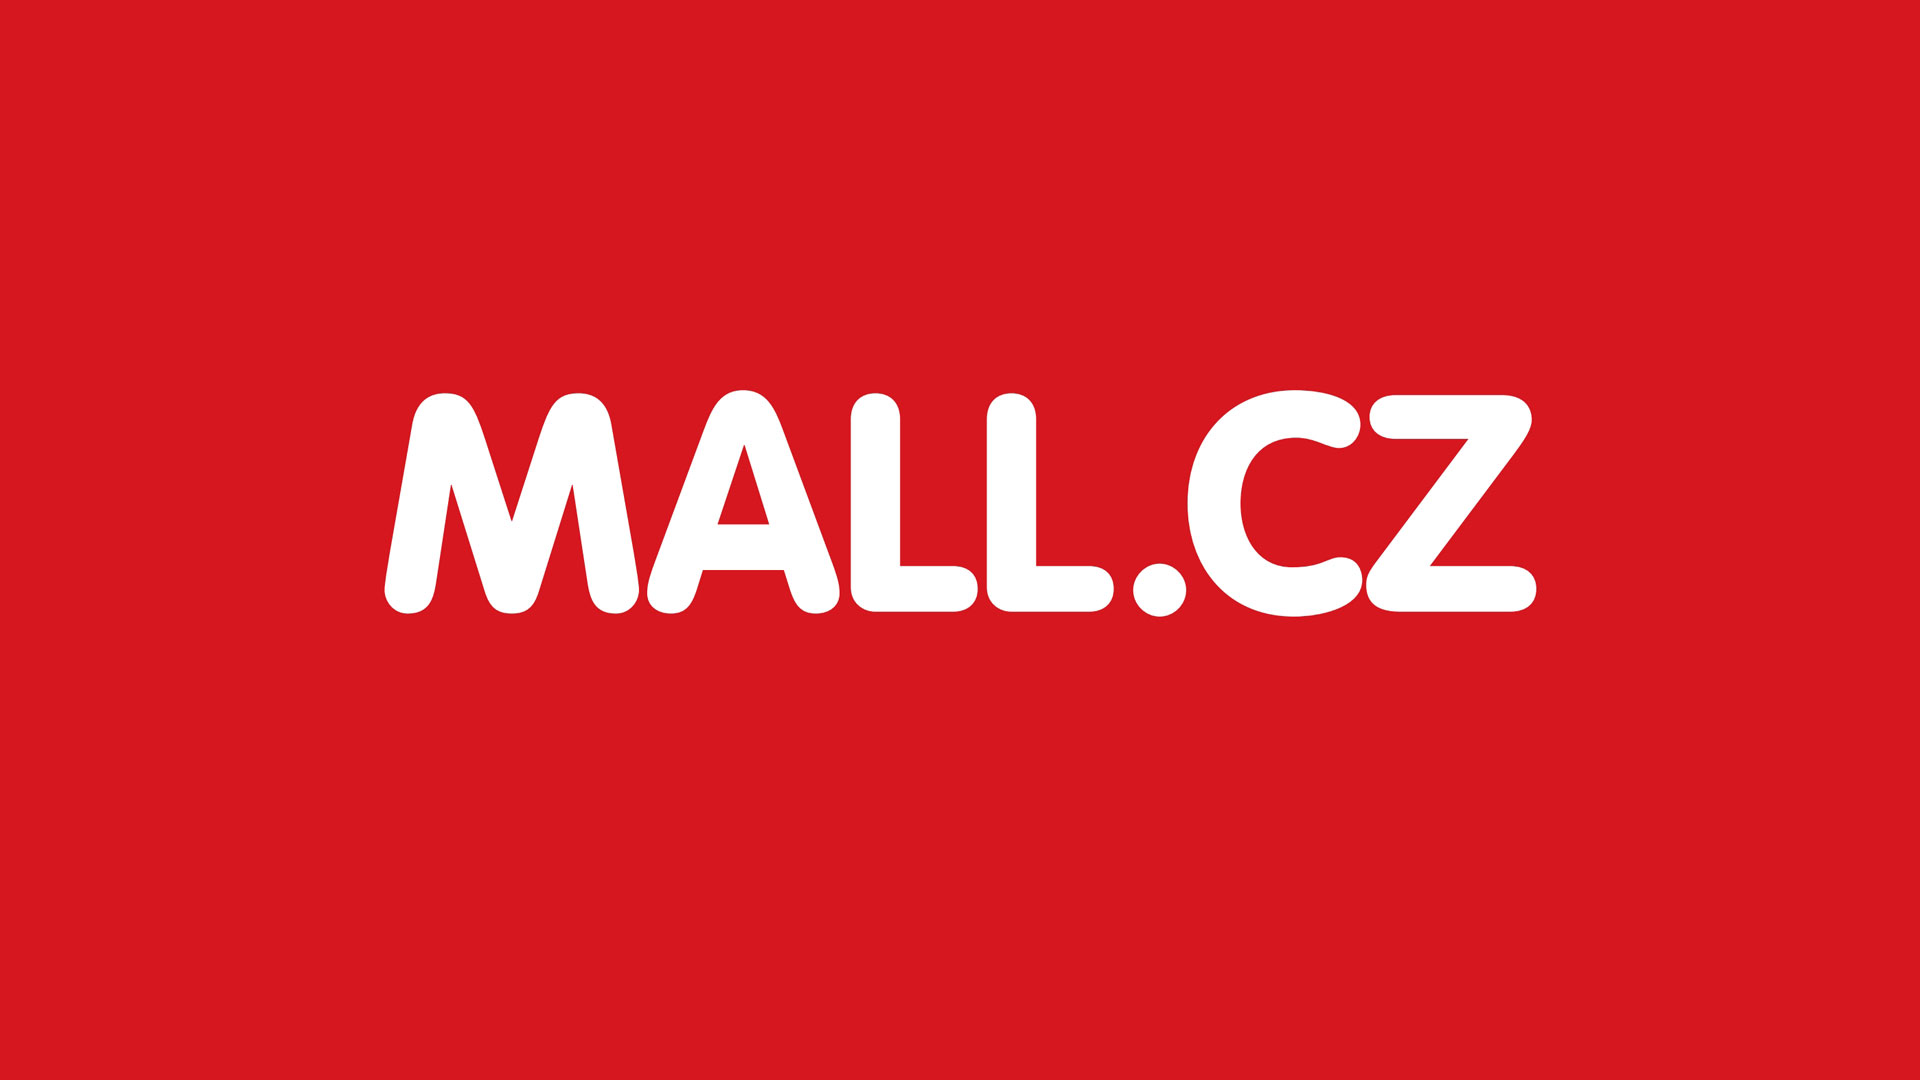 Mall.cz - Rádiové spoty na internetový obchod